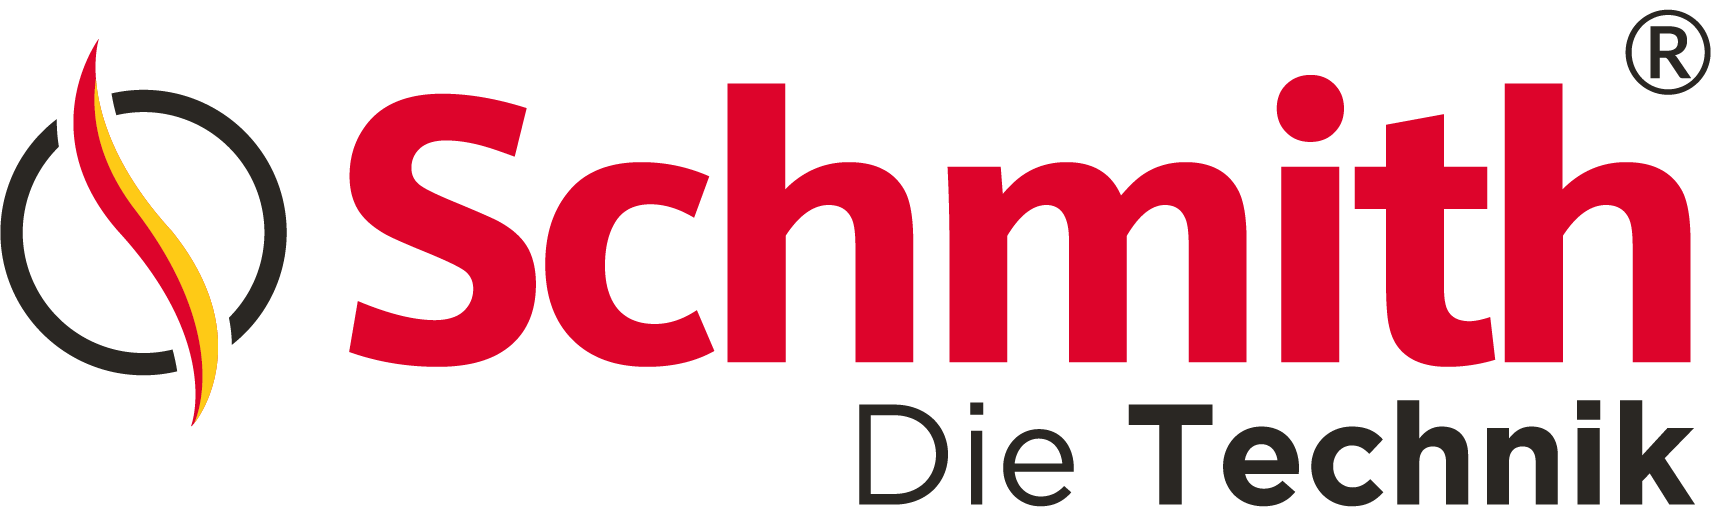 https://admin.link-io.app/files/wholesaller/logo_Schmith_die_technik_CMYK.png | Linkio kereső